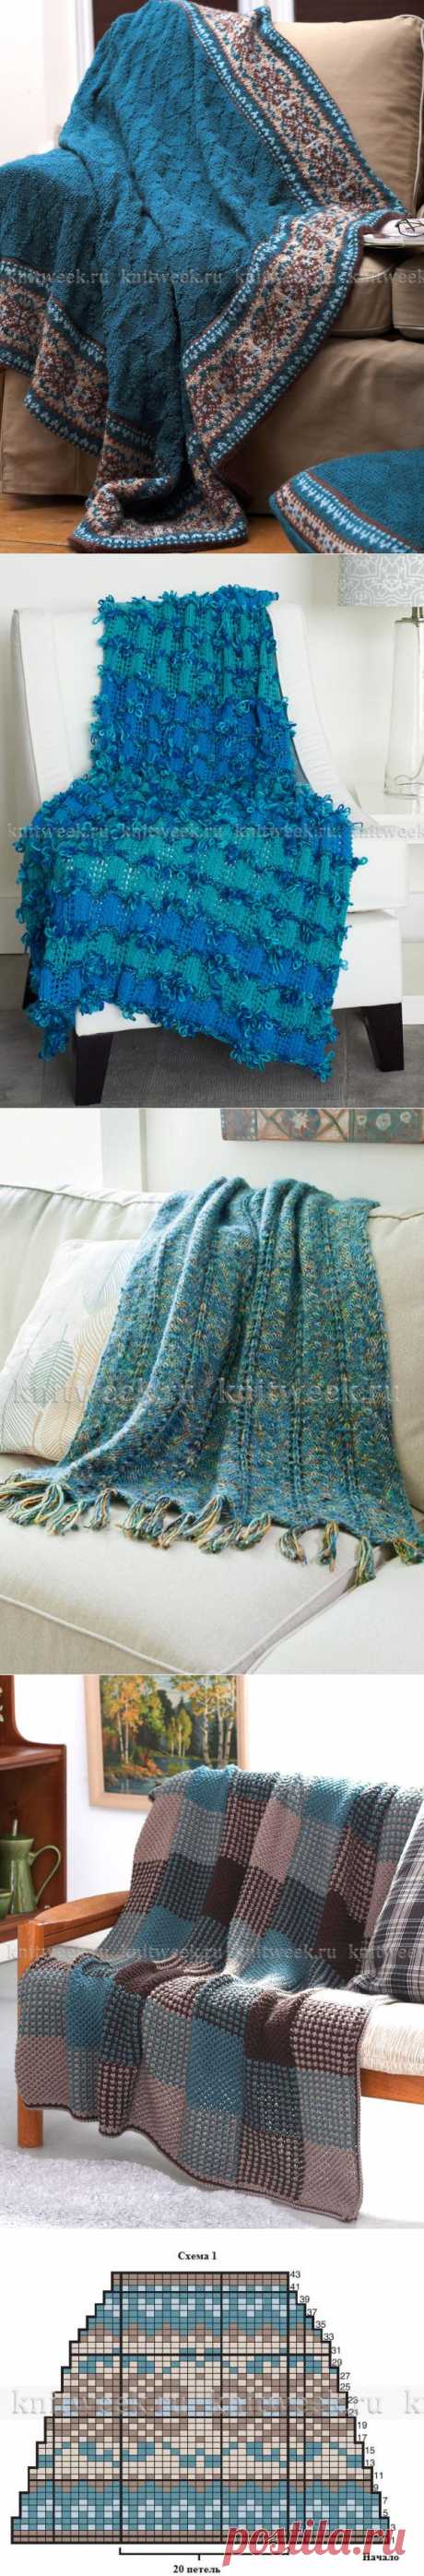 вяжем спицами одеяла и подушку для красоты и уюта нашего дома